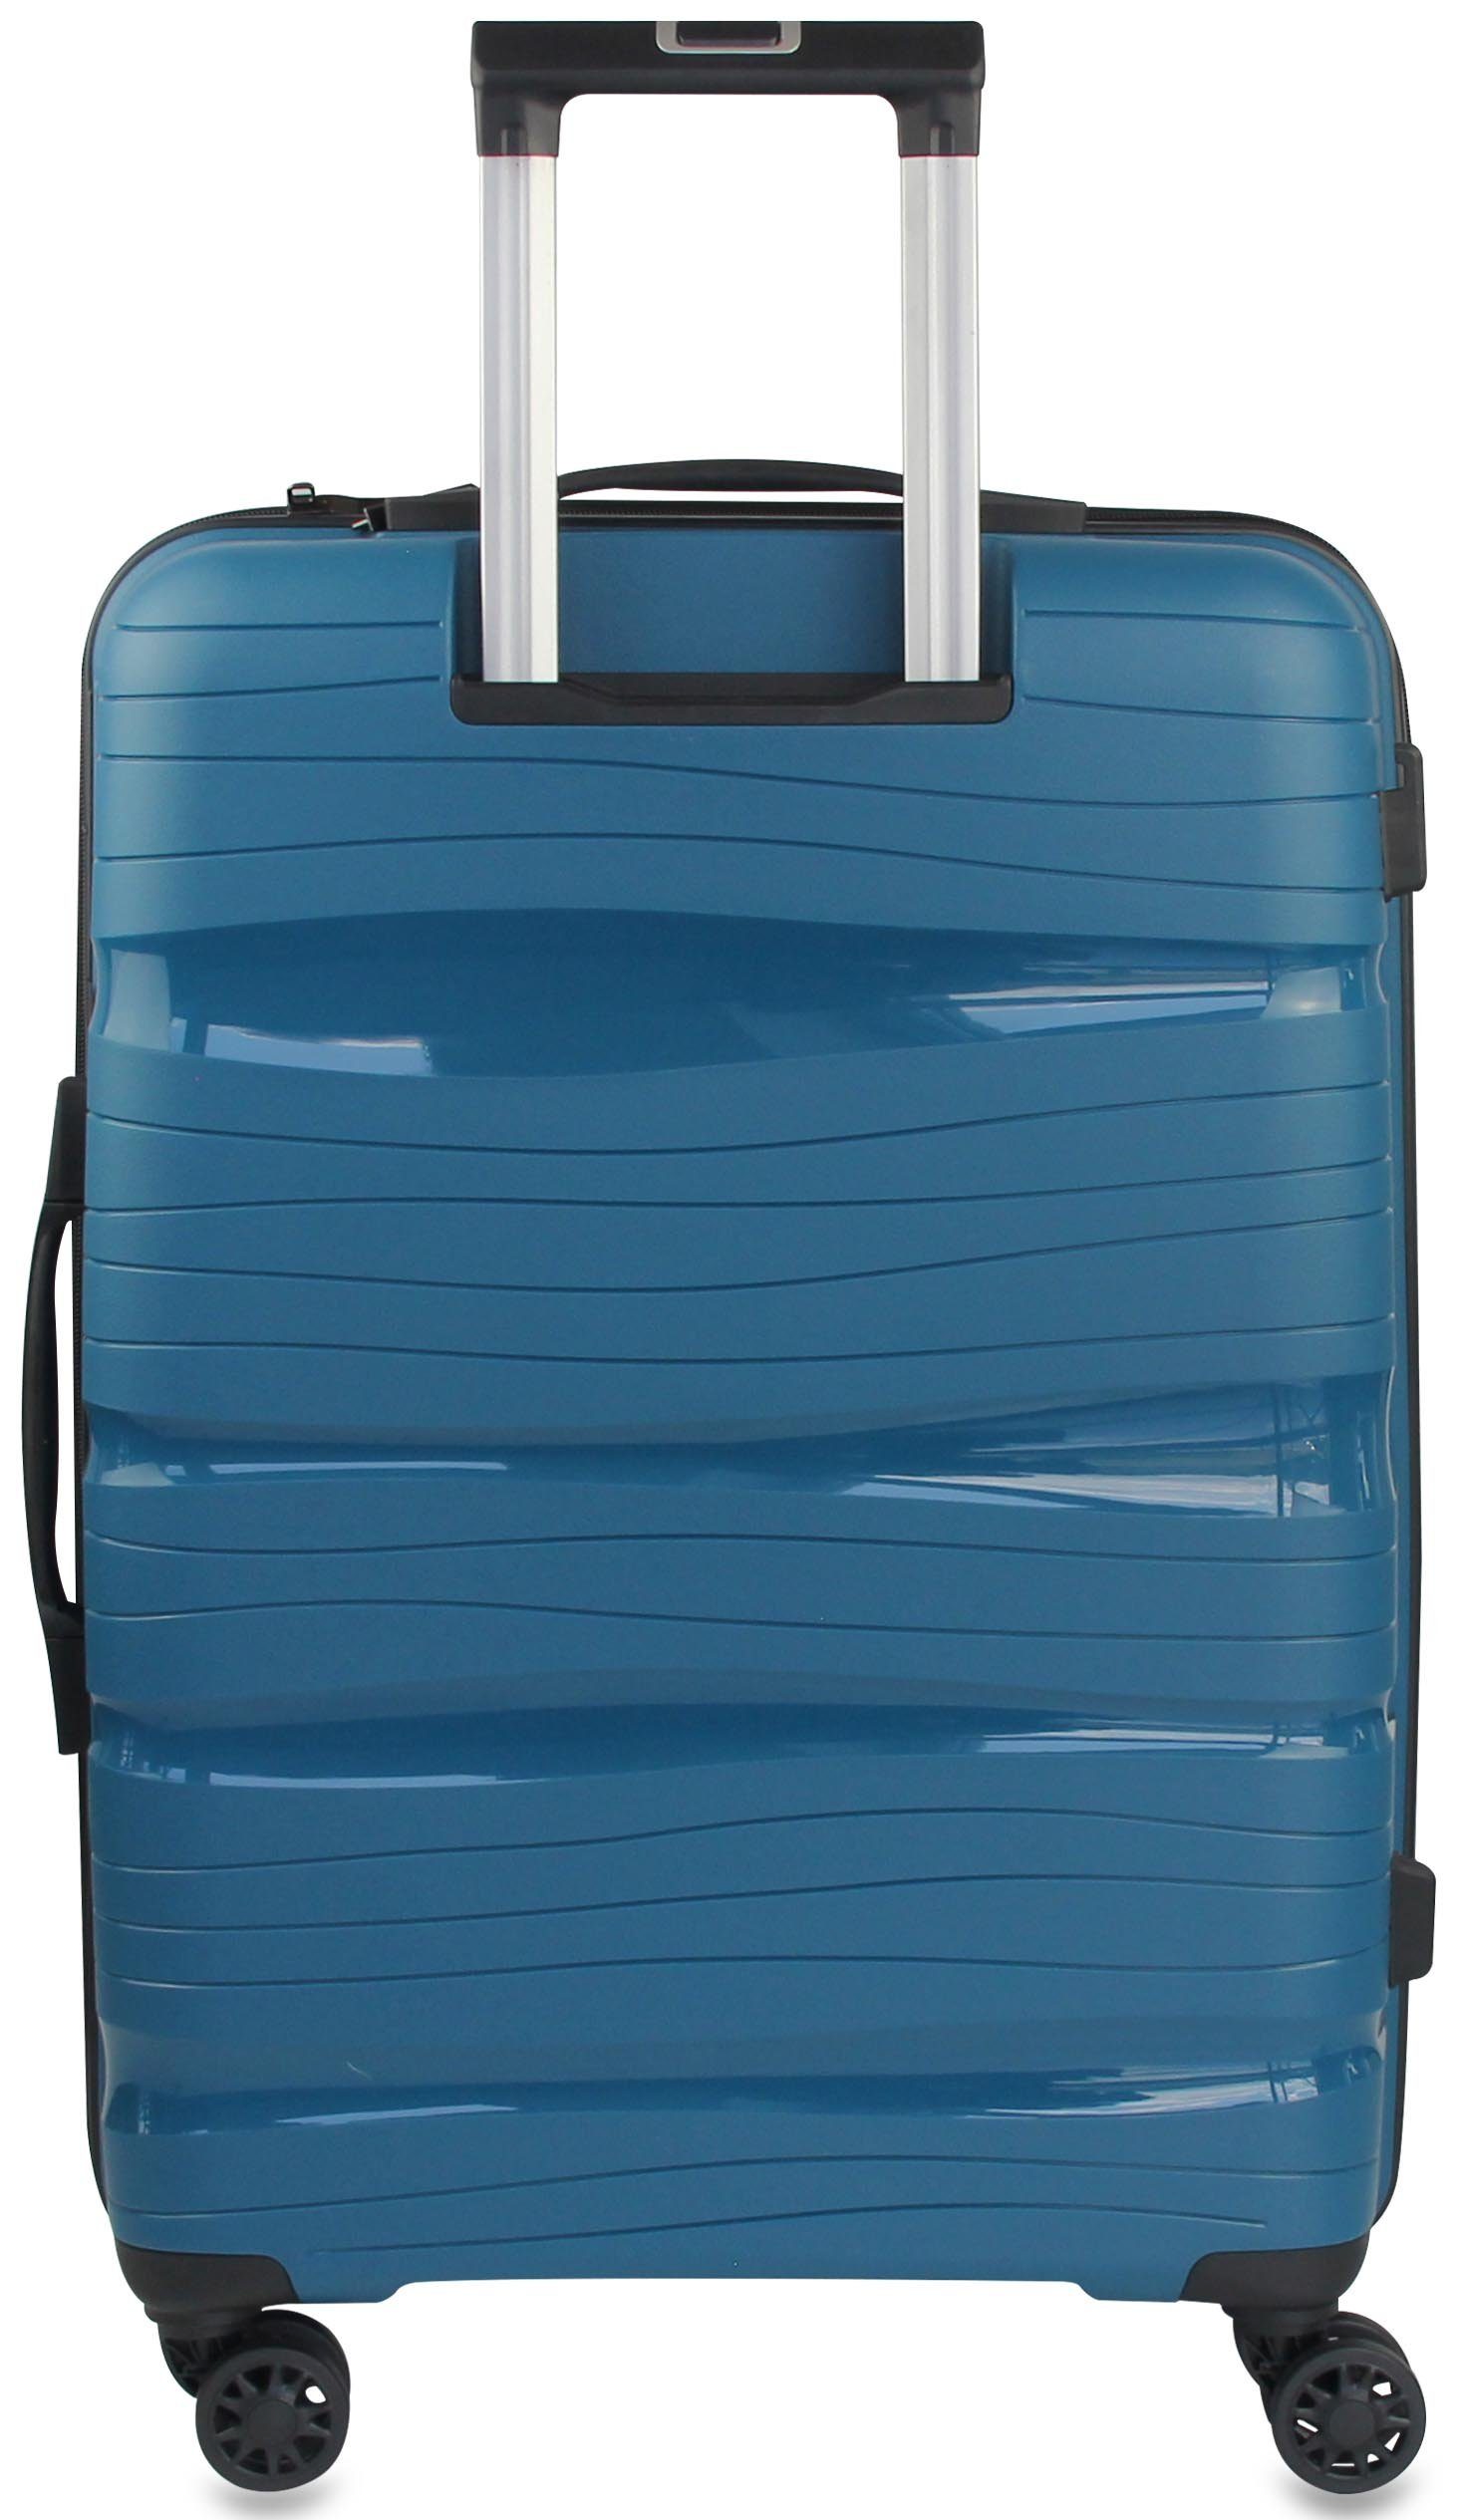 Handgepäck/L/XL drehbar Frentree Rollen, Größen: aus Lakeblau 4 Kunststoff (3 SET) Koffer Trolley TSA-Zahlenschloss, ABS 360° oder mit